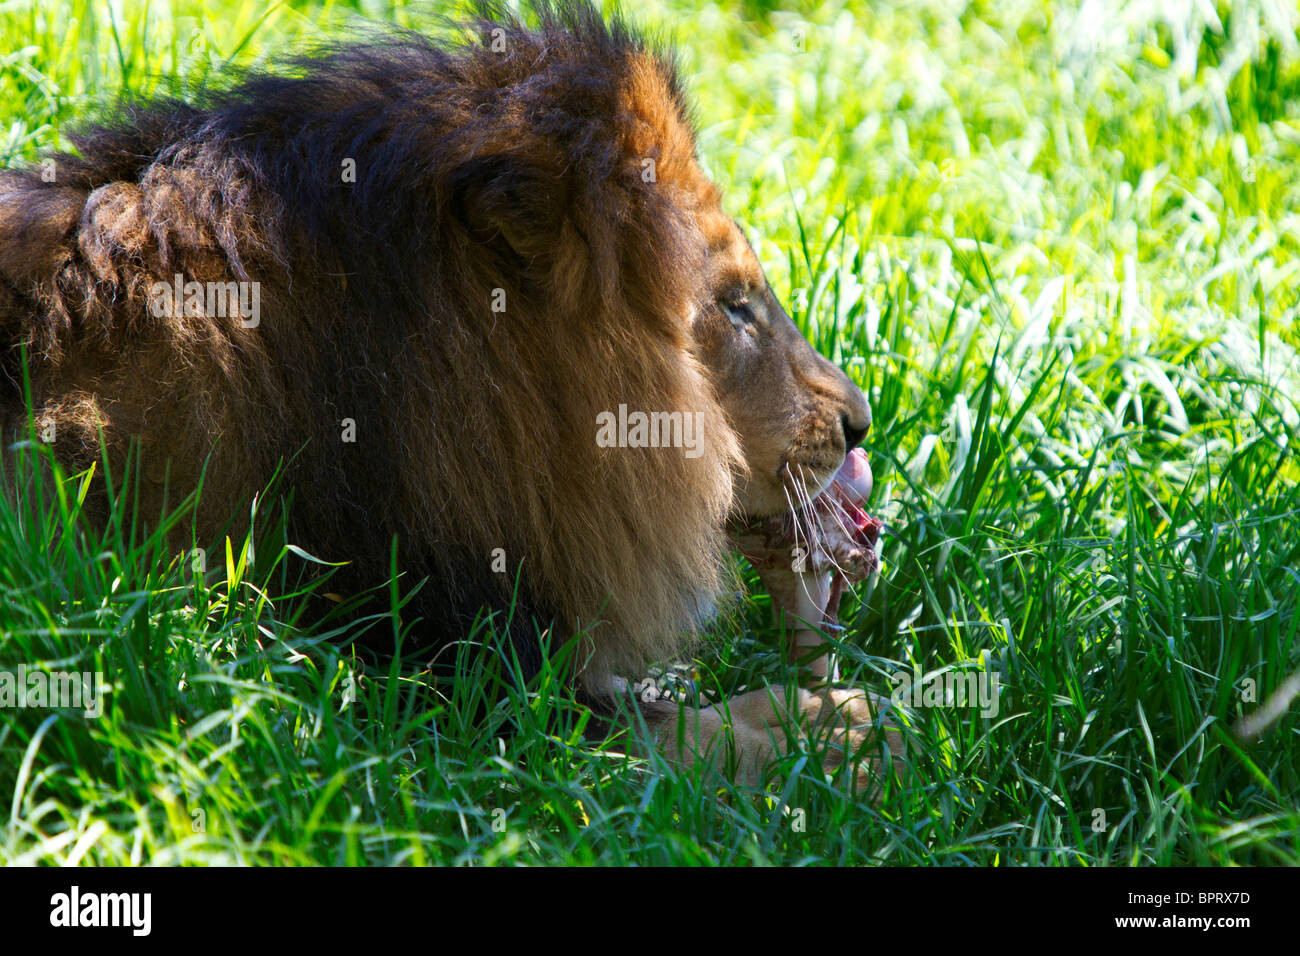 Un homme l'African Lion (Panthera leo) mange de la viande à partir d'un os dans l'herbe, San Diego Zoo Safari Park, Escondido, Californie Banque D'Images